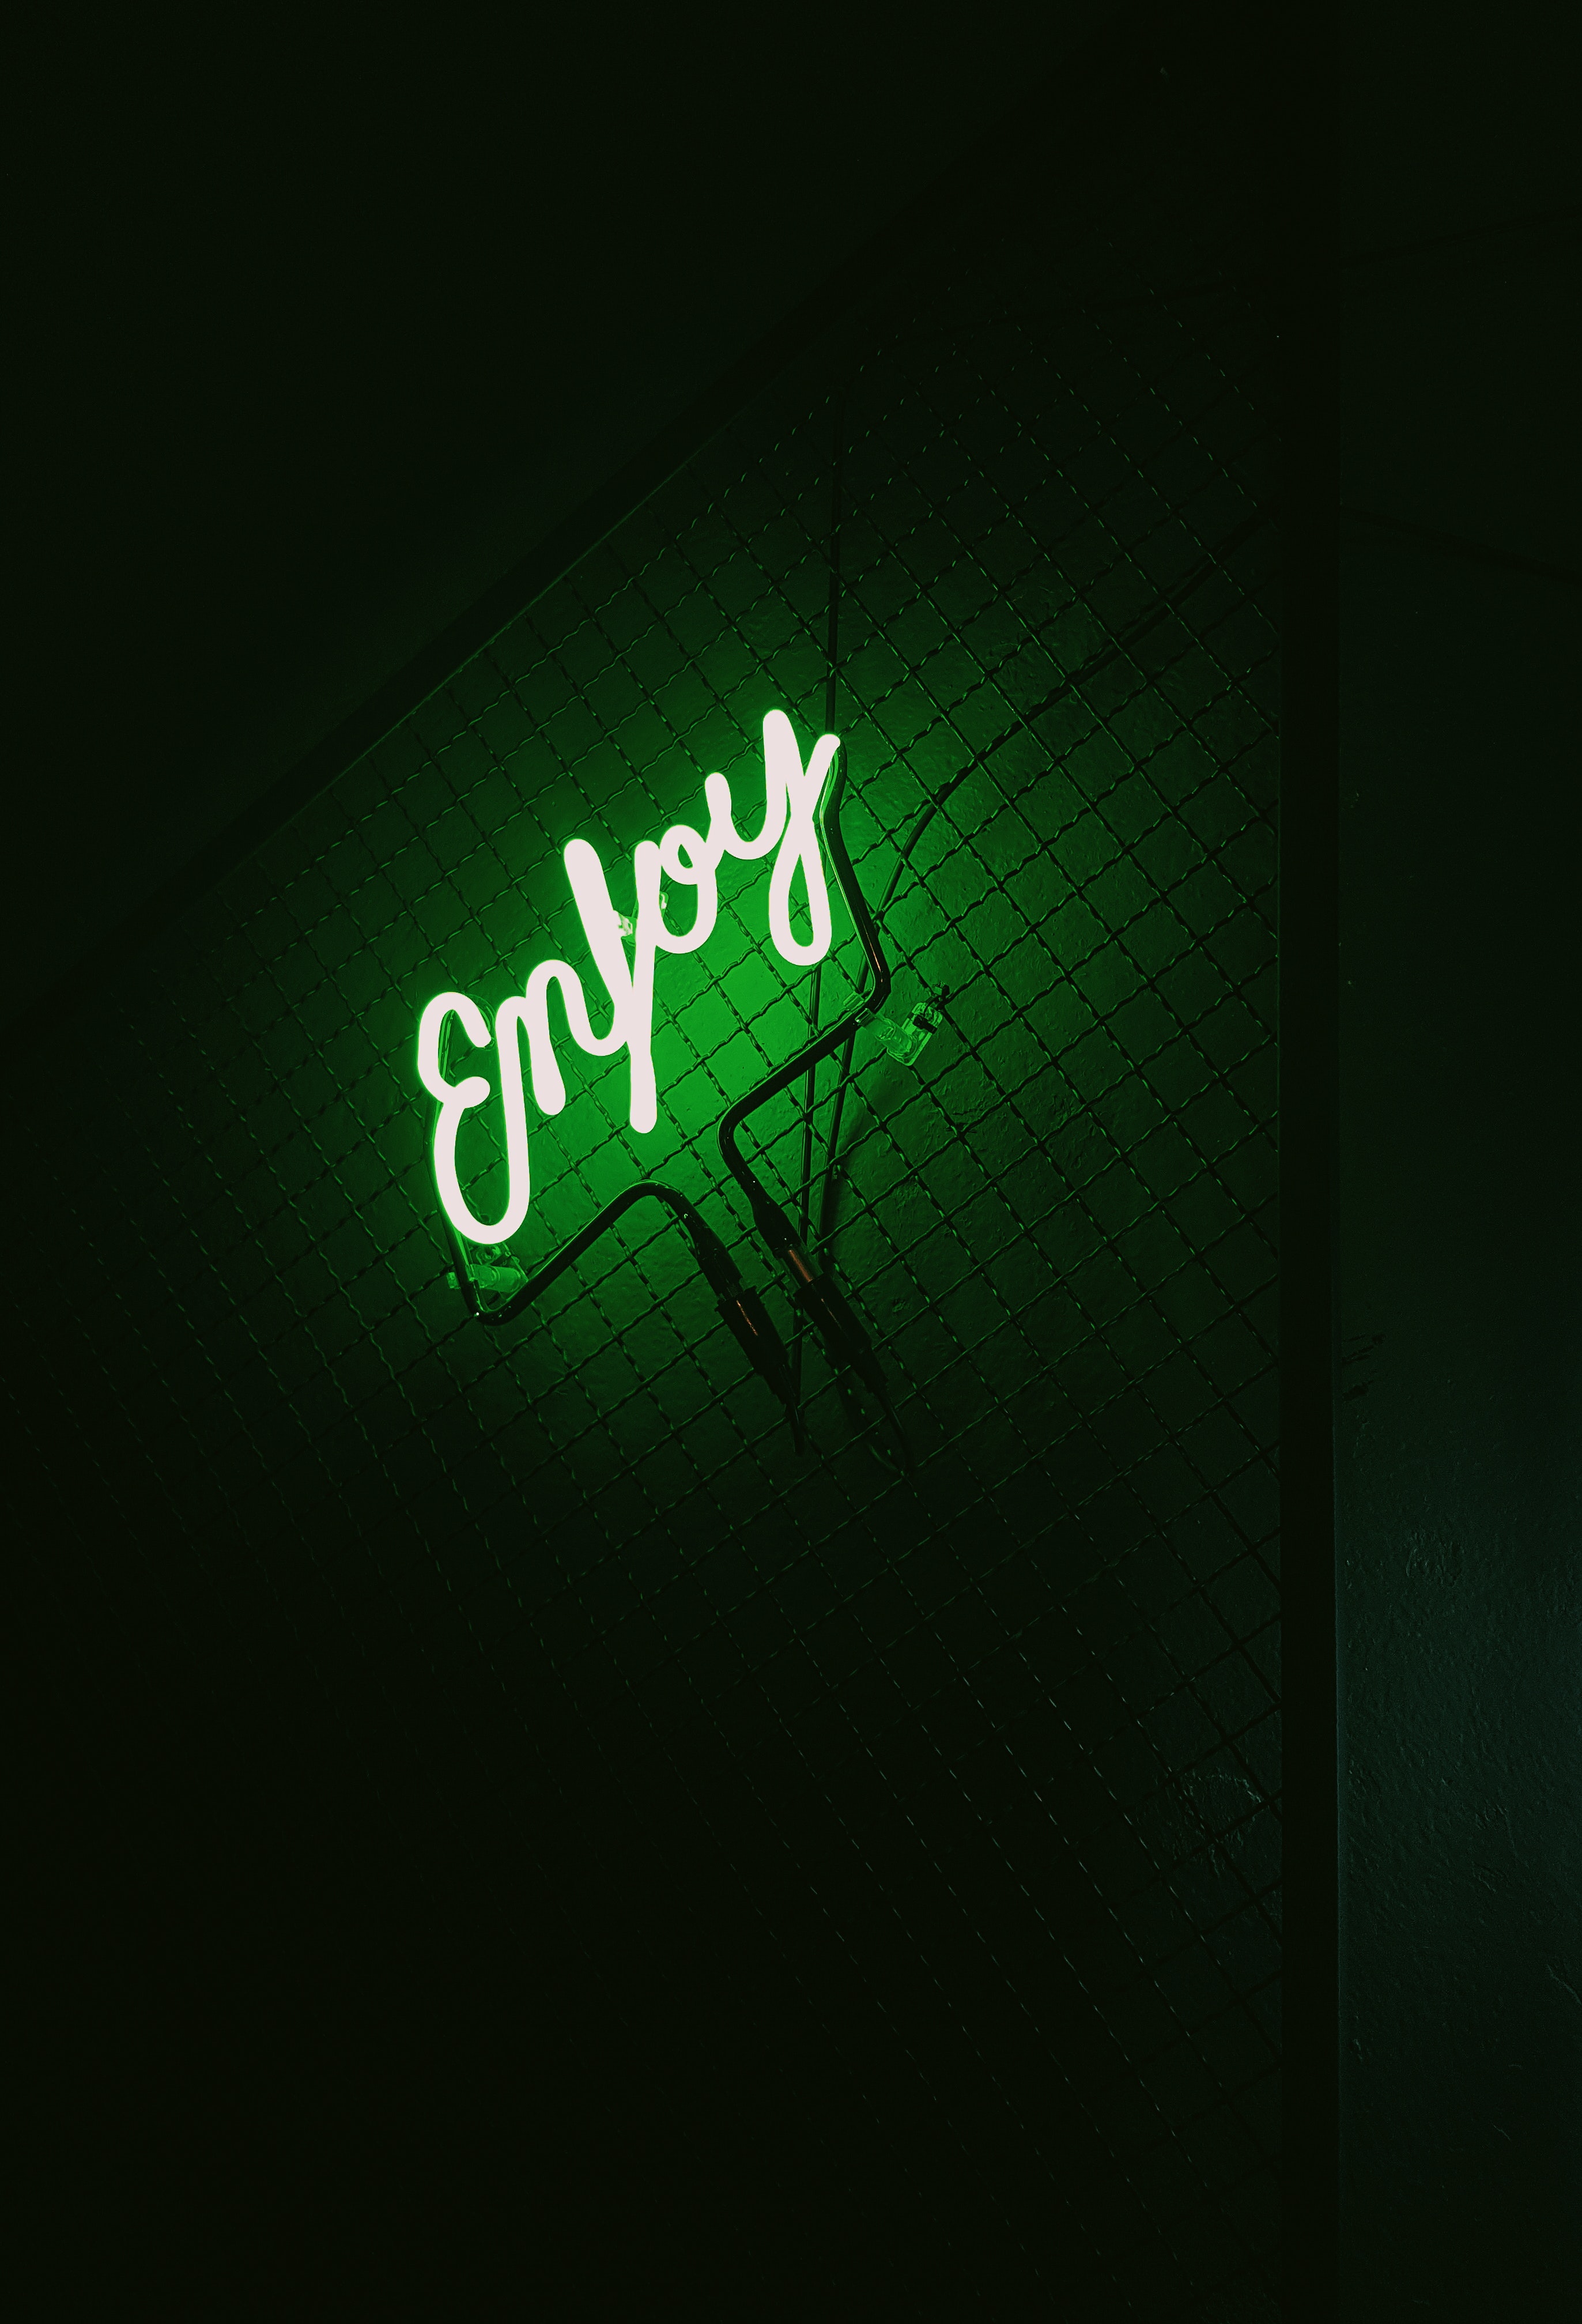 dark, backlight, words, neon, green, illumination, inscription cellphone